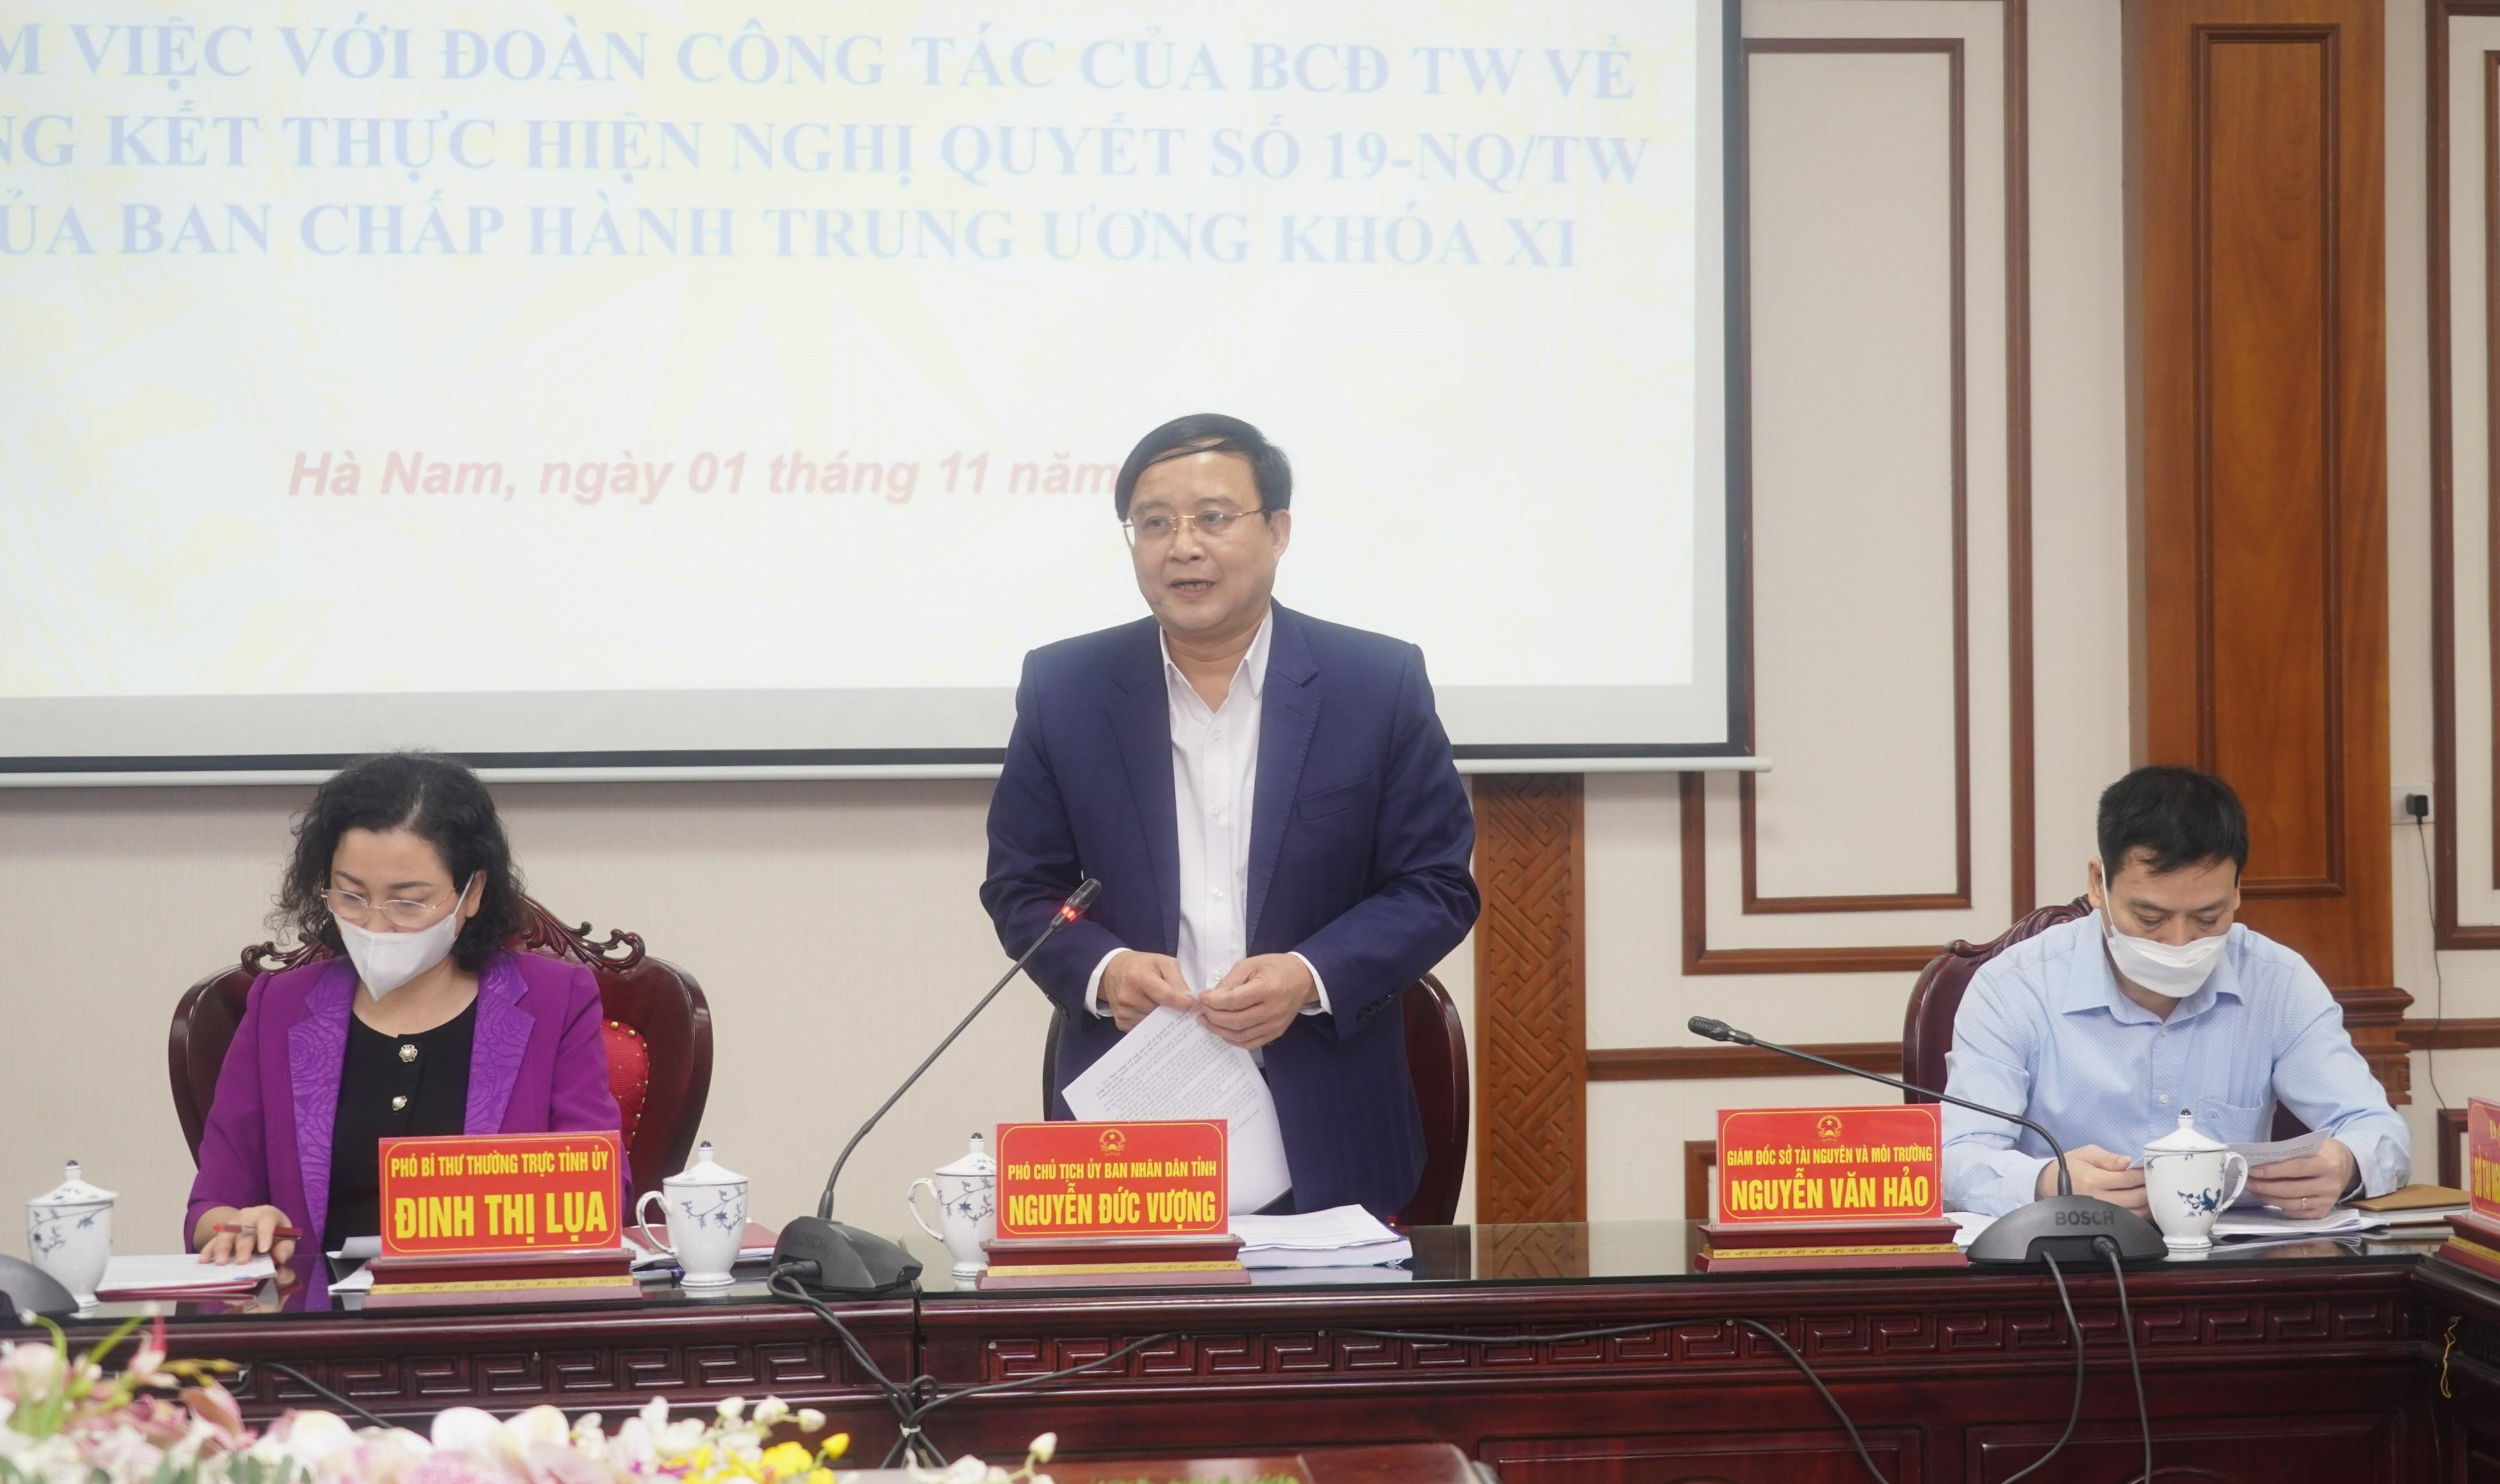 Đồng chí Phó Chủ tịch UBND tỉnh Hà Nam báo cáo tại Hội nghị